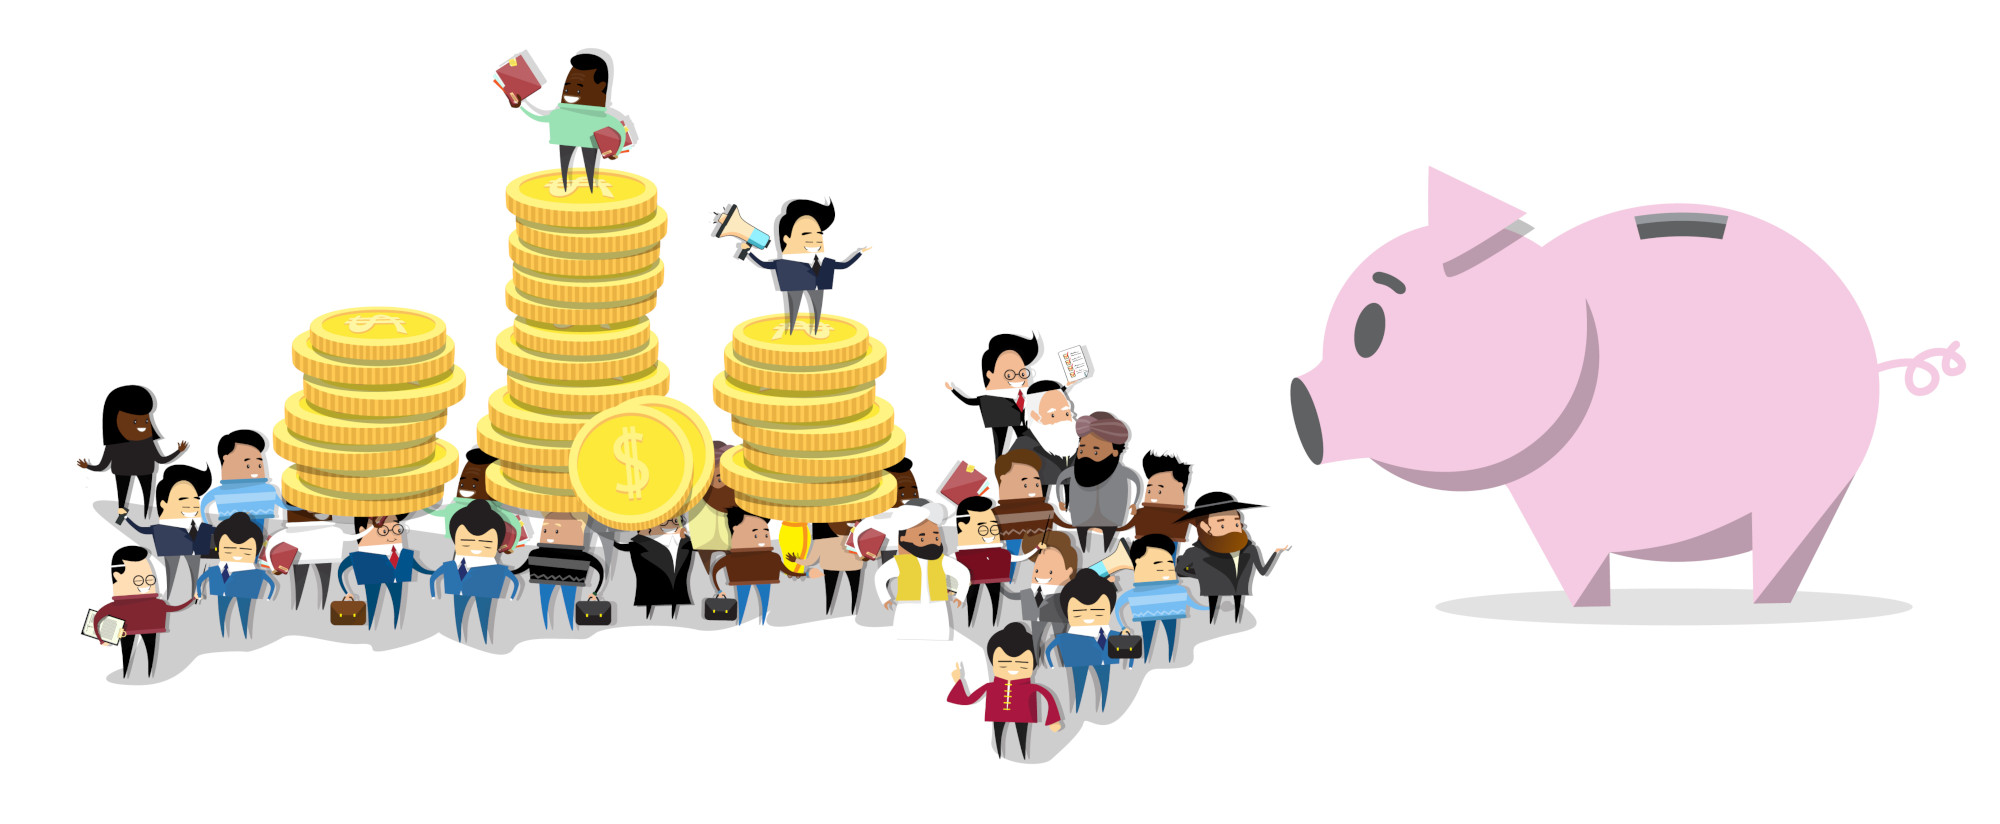 Толпа мультяшных инвесторов несет монеты в громадную свинью-копилку